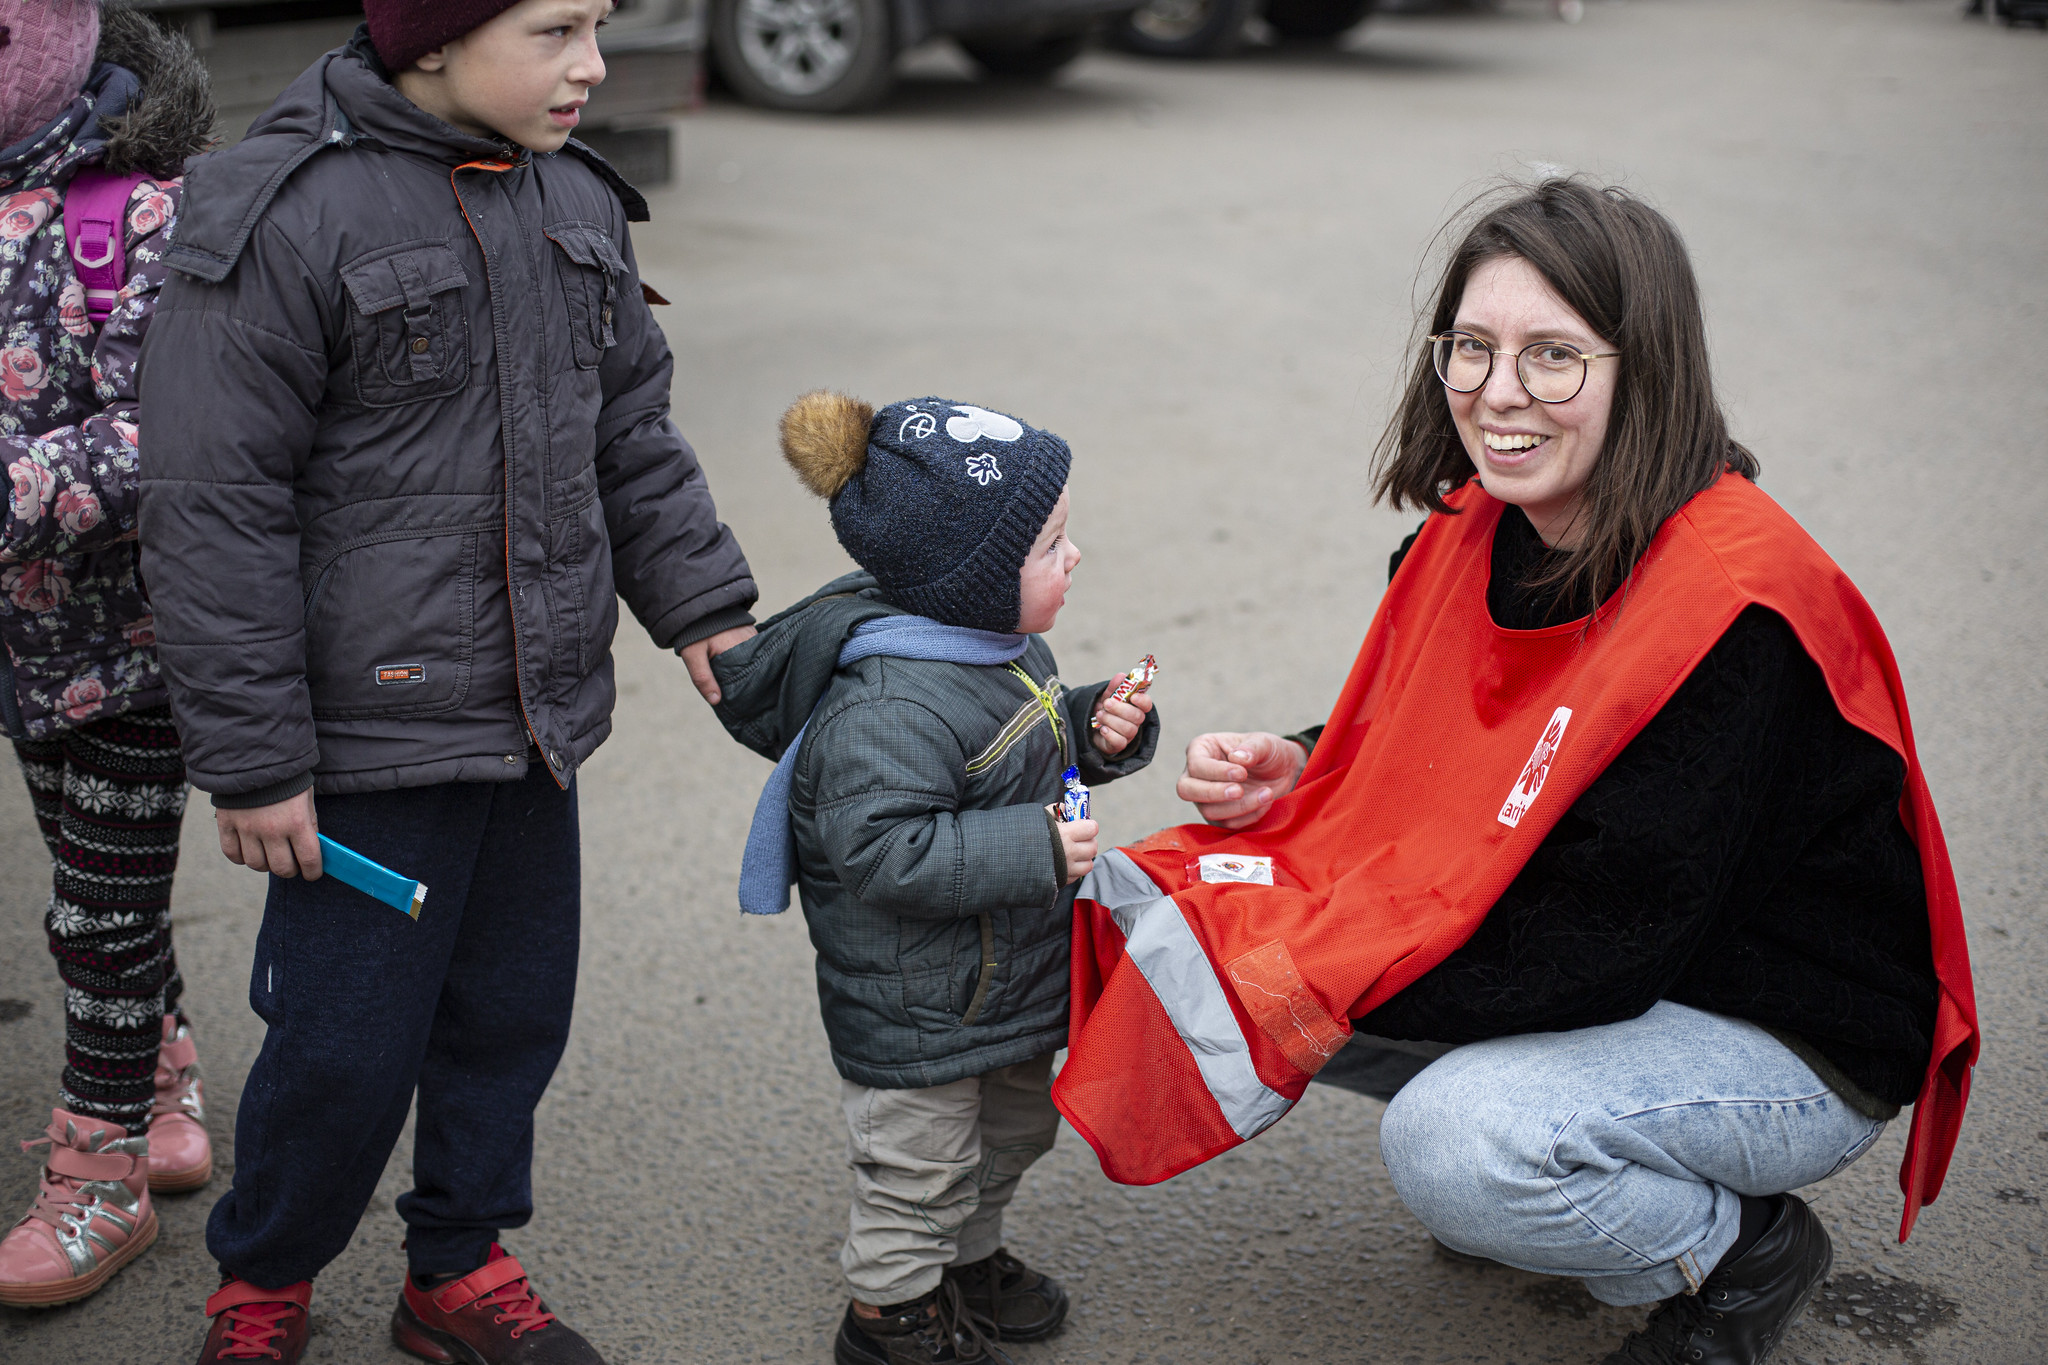 Natasza Bogacz deler ut godteri til barn som har flyktet fra krigen i Ukraina og over grensa til Polen.